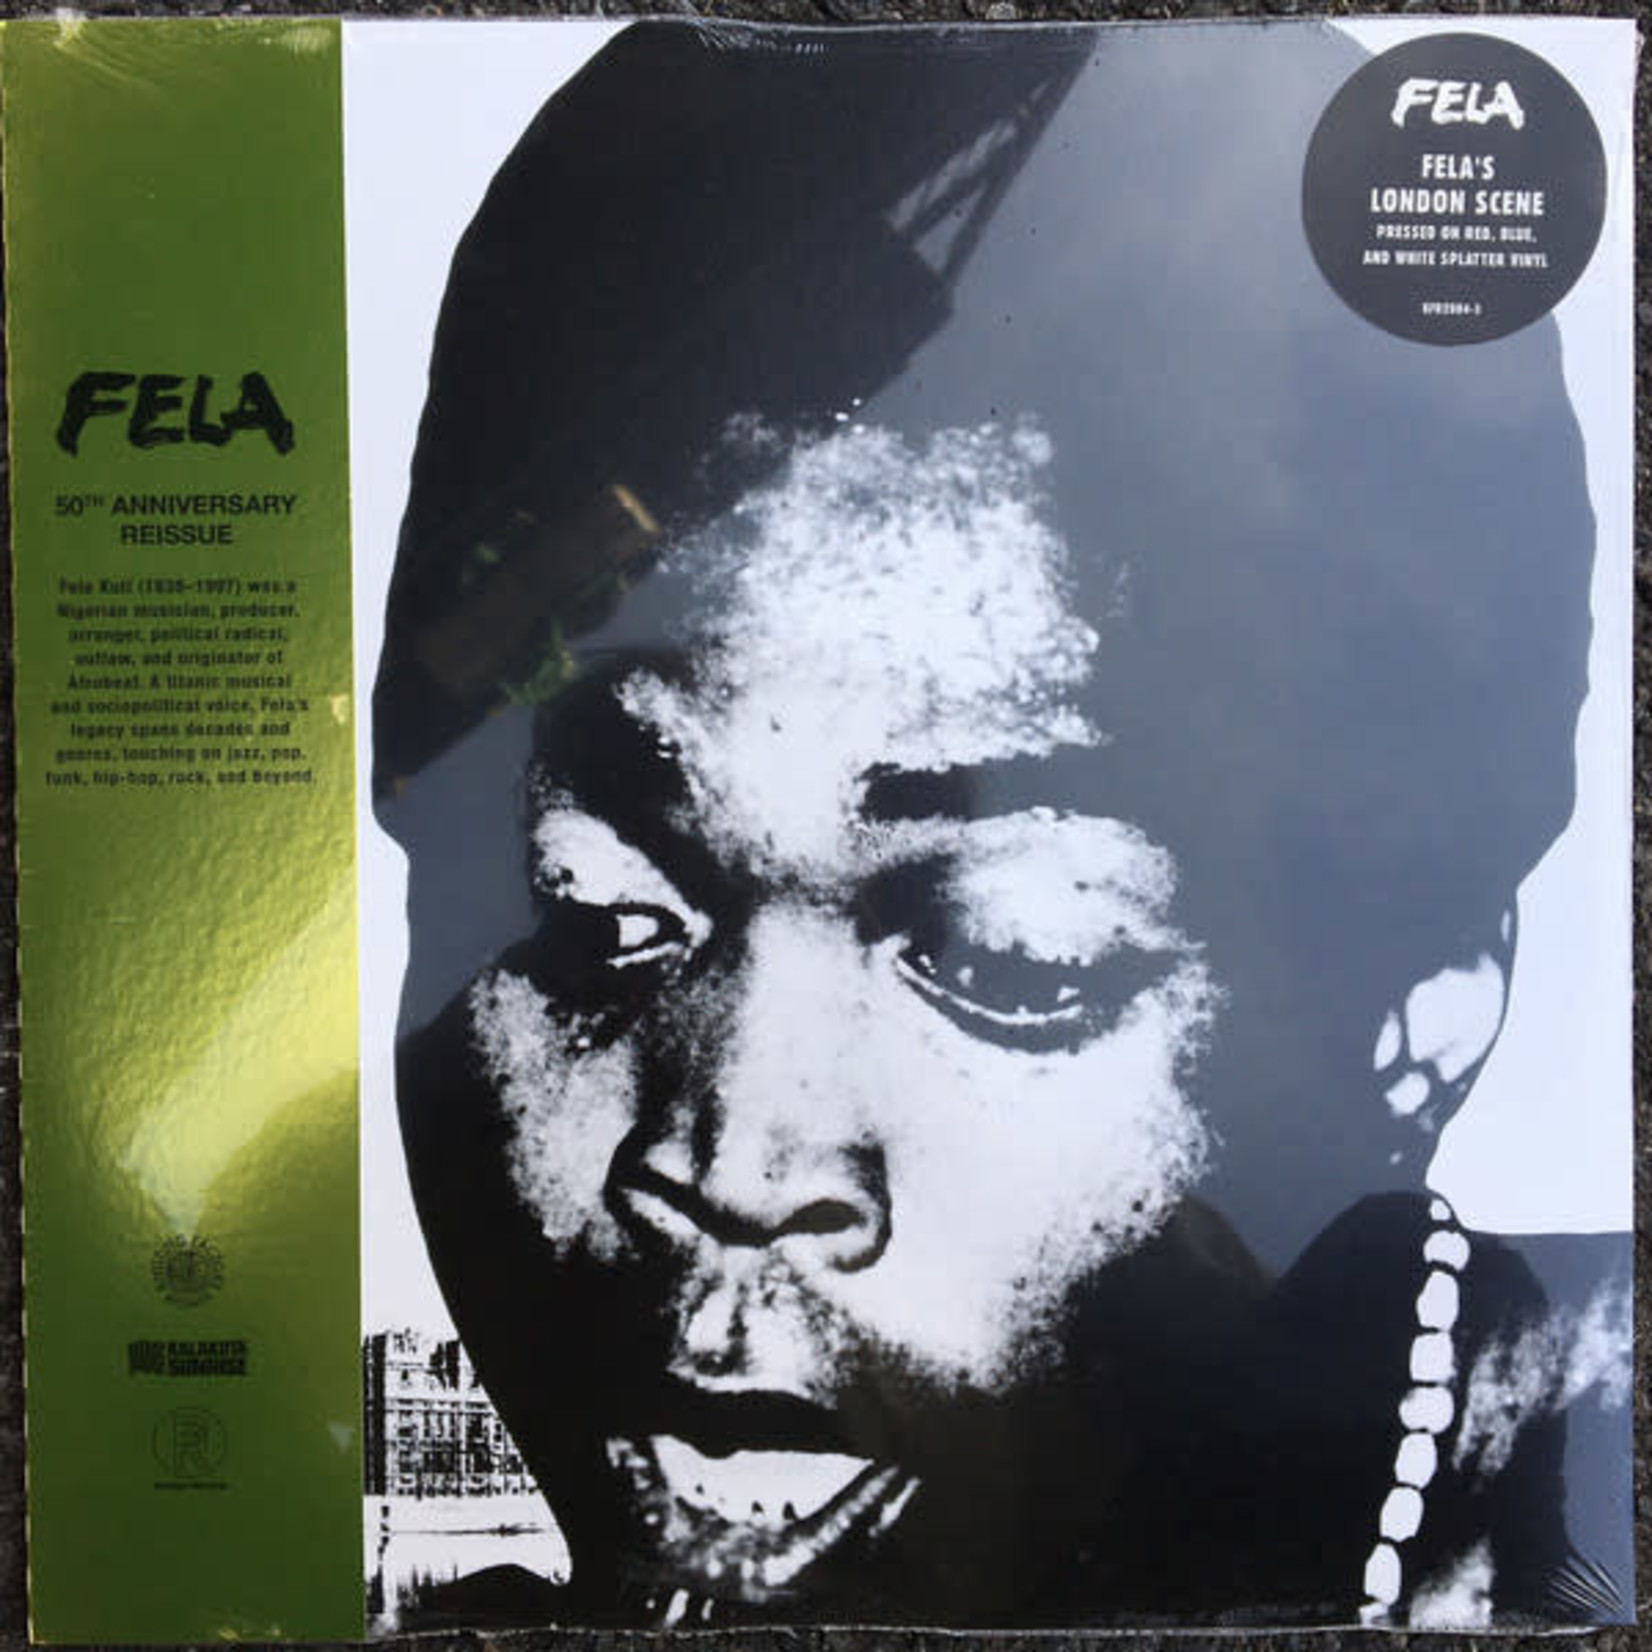 Knitting Factory Fela Ransome Kuti & Afrika 70 - Fela's London Scene (LP) [Red/Blue/White]